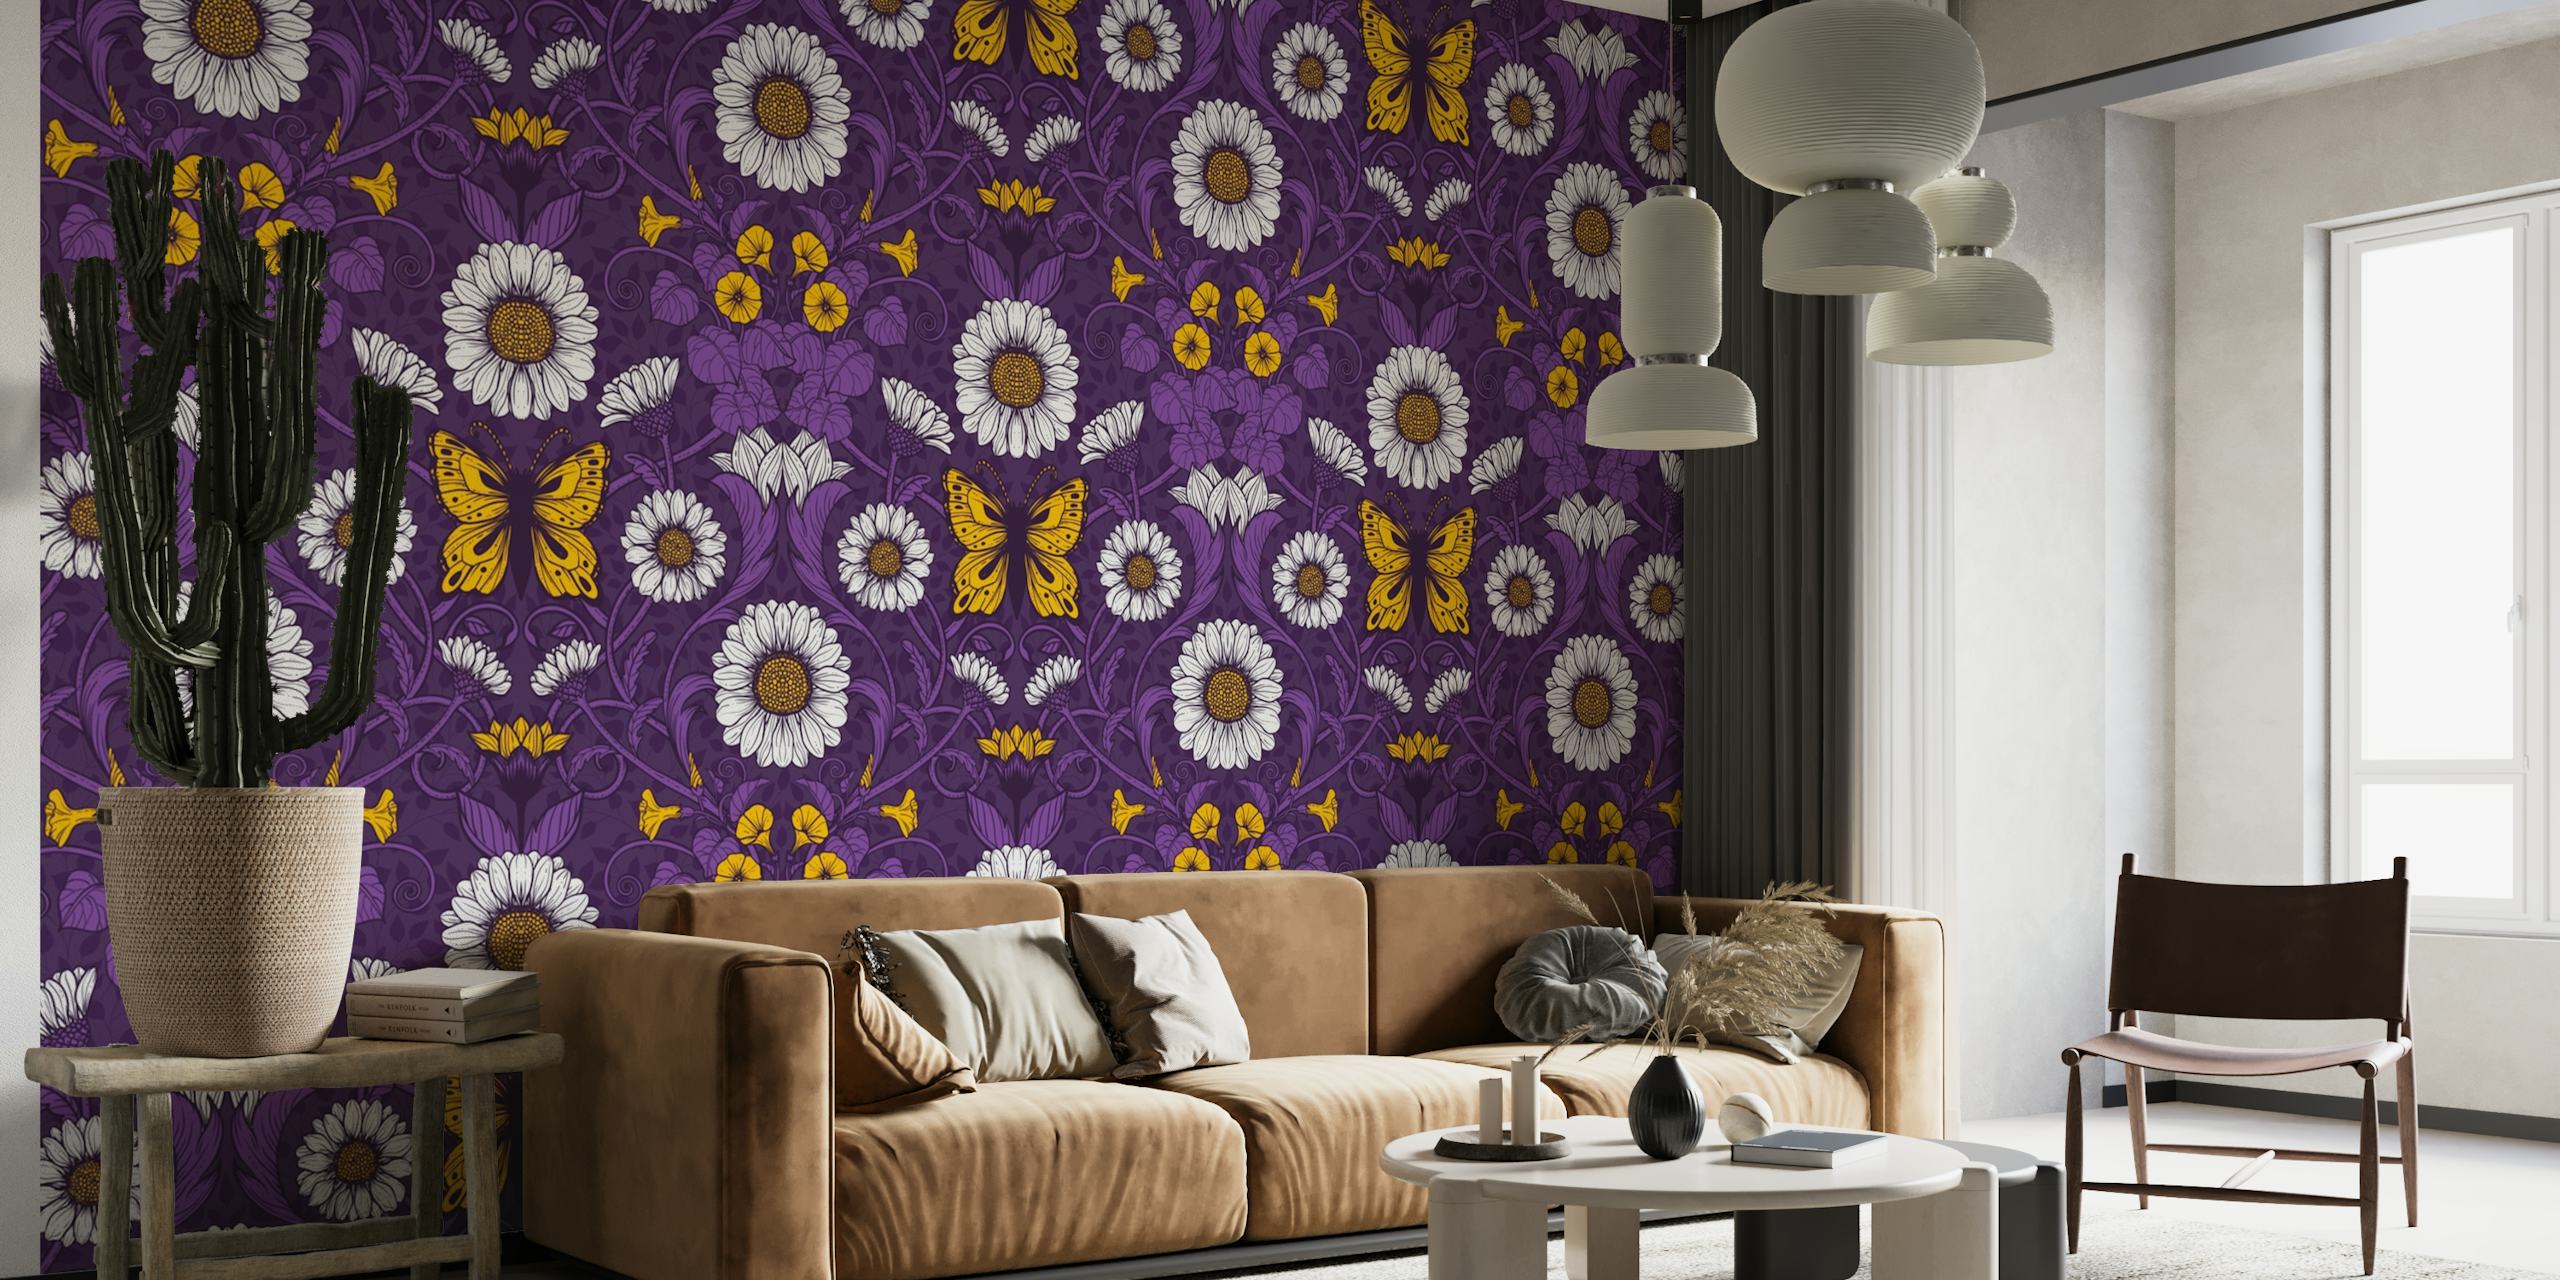 Art Nouveau style daisy pattern in purple hues wall mural